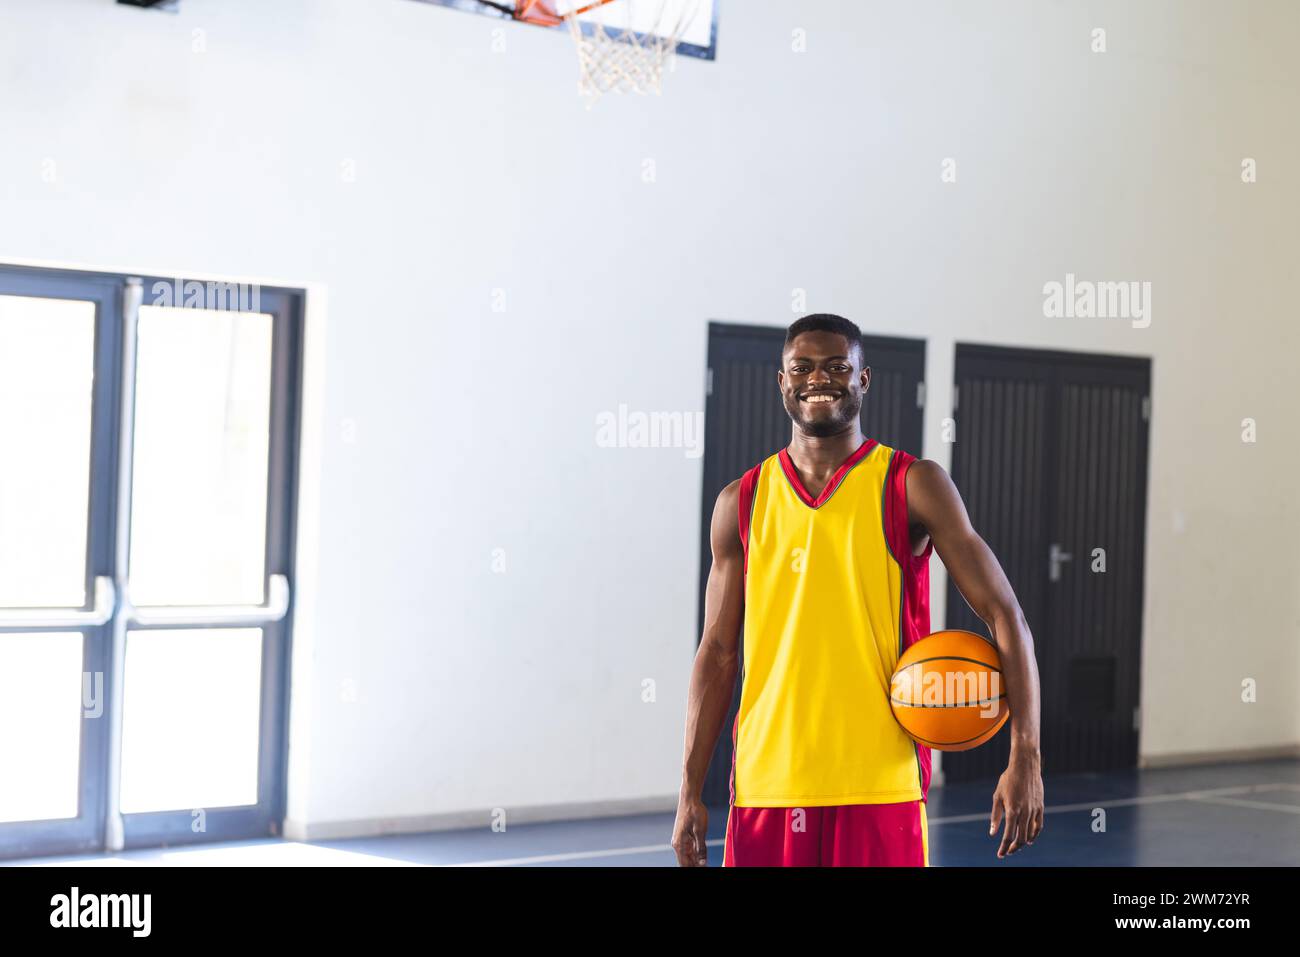 Ein junger Afroamerikaner steht stolz auf einem Basketballfeld Stockfoto